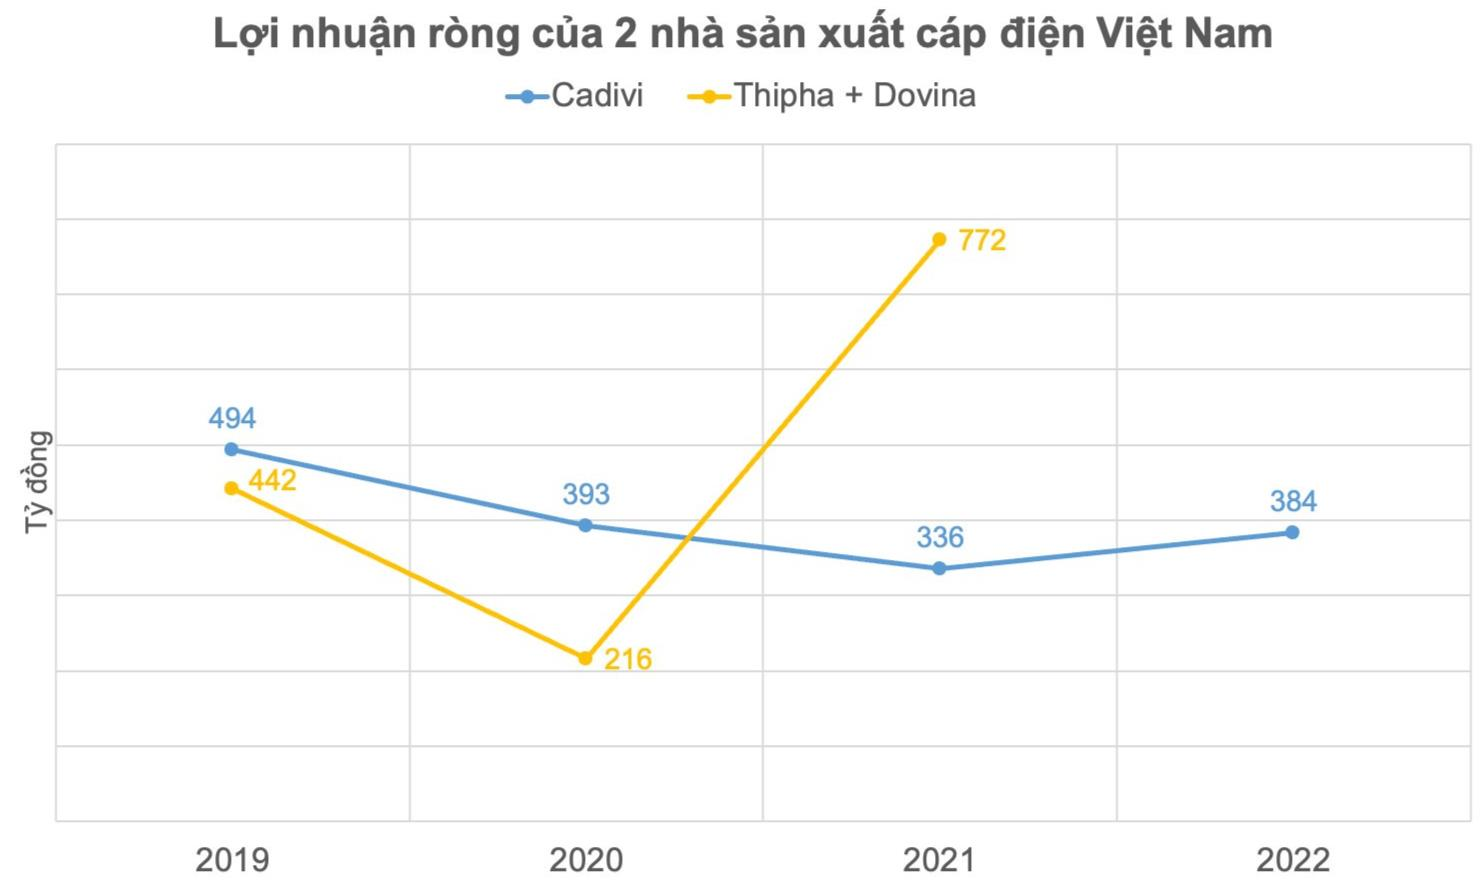 2 tỷ đô vốn hóa đã bốc hơi 99%: Tập đoàn dính bê bối rúng động Thái Lan từng chi gần 5.000 tỷ đồng mua 2 công ty cáp điện Việt Nam, tái cơ cấu tạo lợi nhuận vượt xa nhiều công ty nội - Ảnh 2.